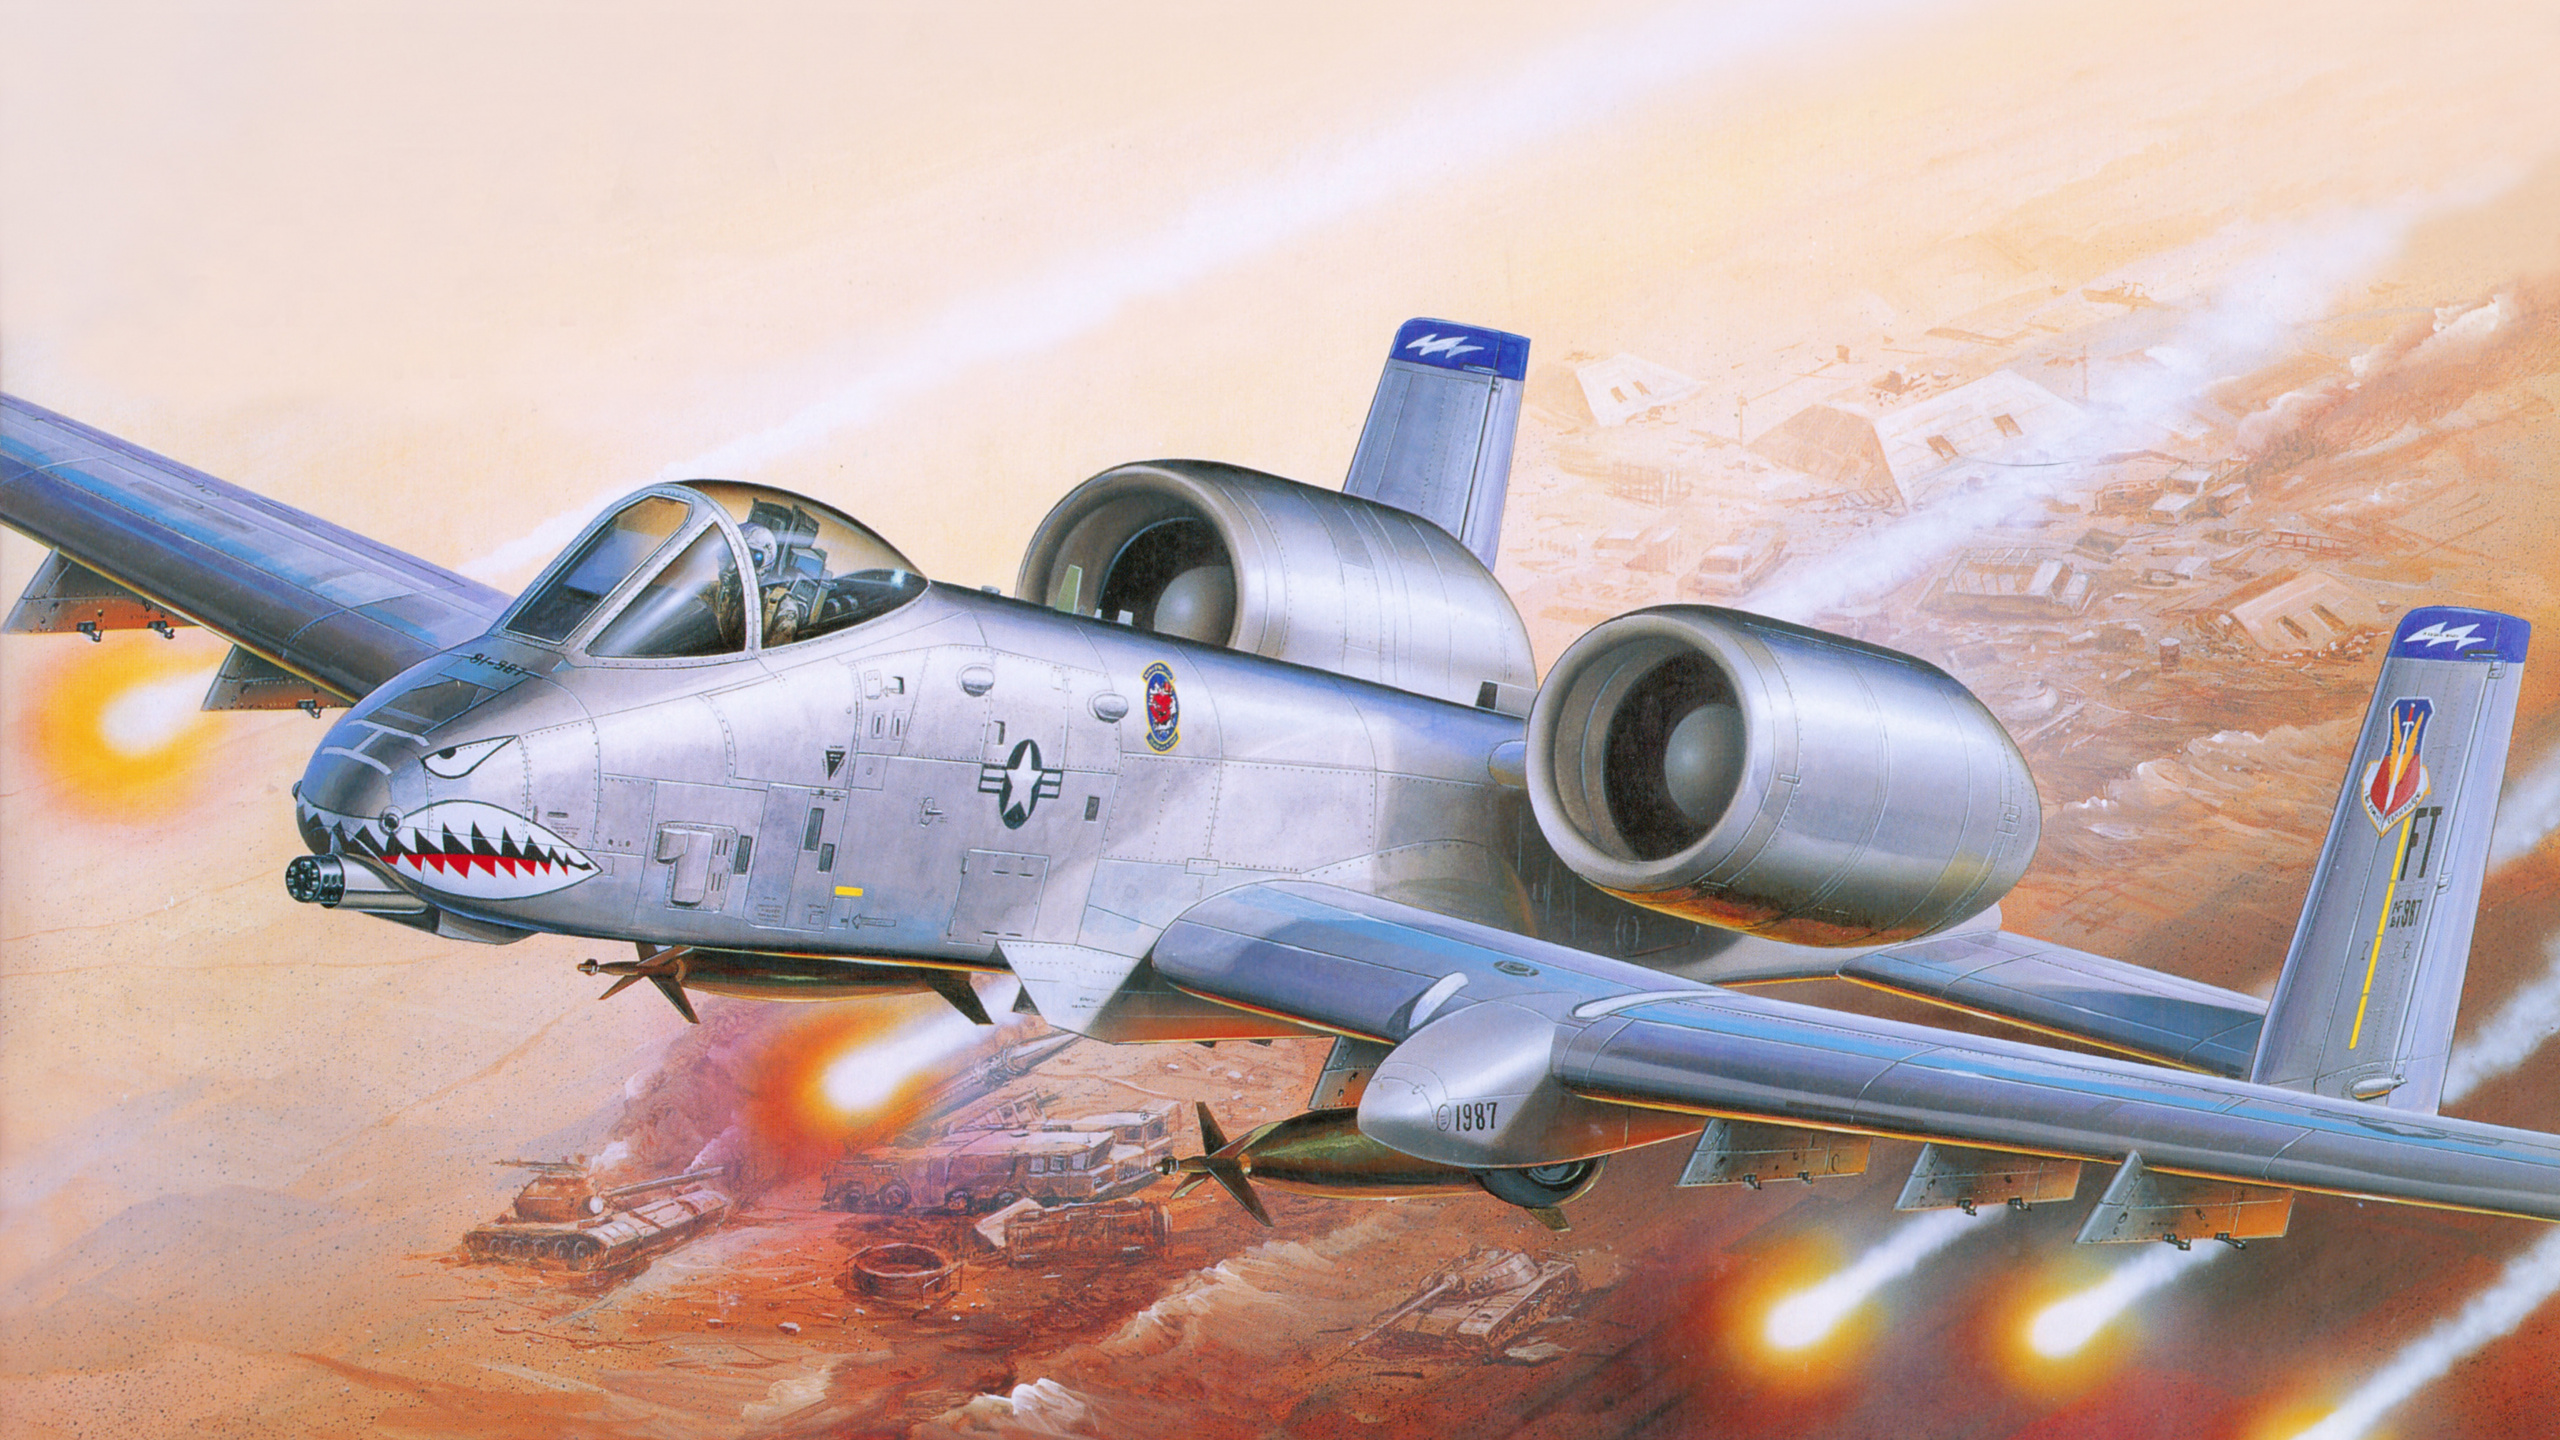 塑料模型, 航空, 喷气式飞机, 军用飞机, 空军 壁纸 2560x1440 允许